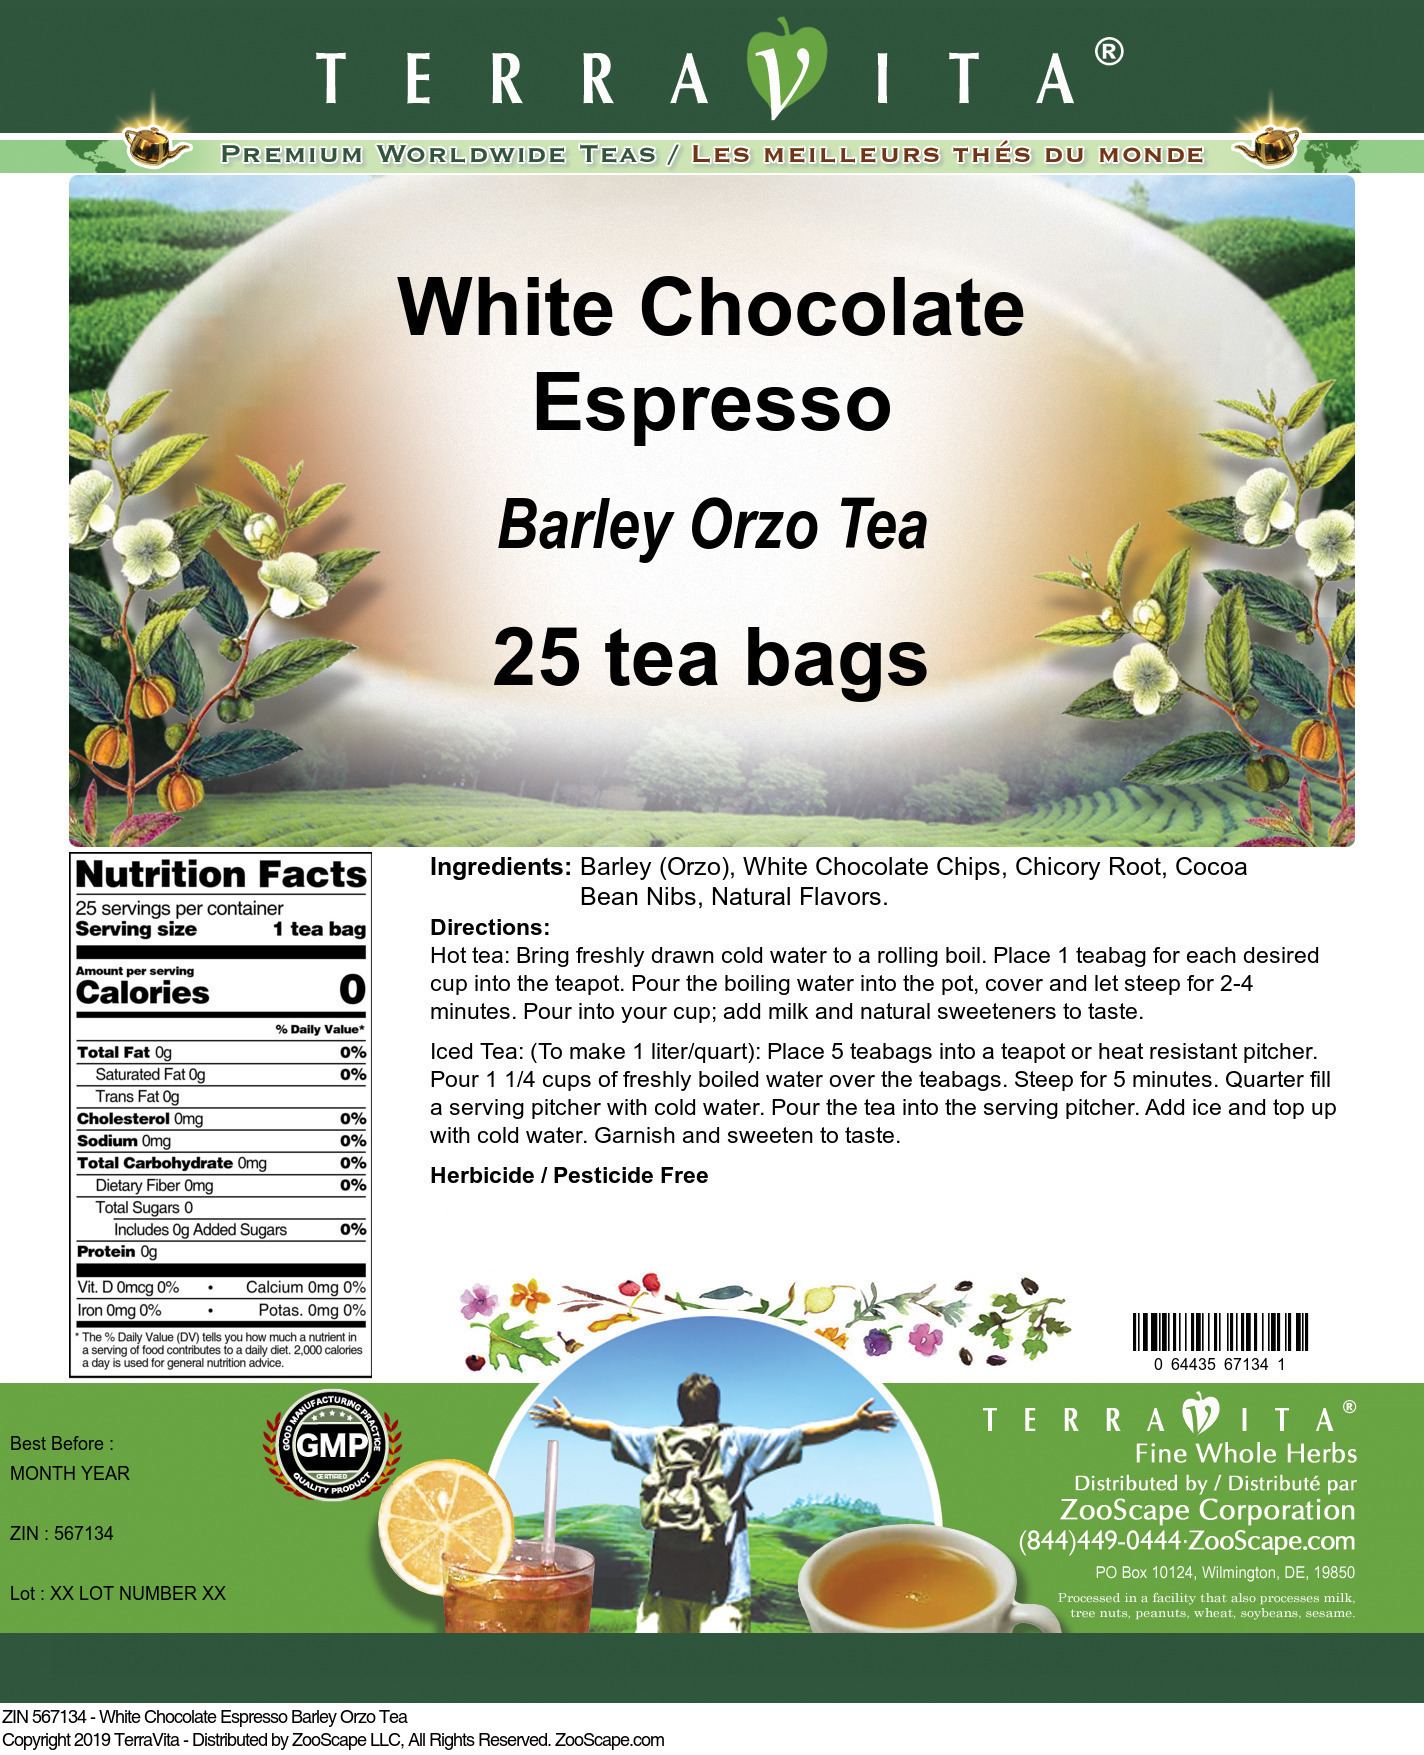 White Chocolate Espresso Barley Orzo Tea - Label